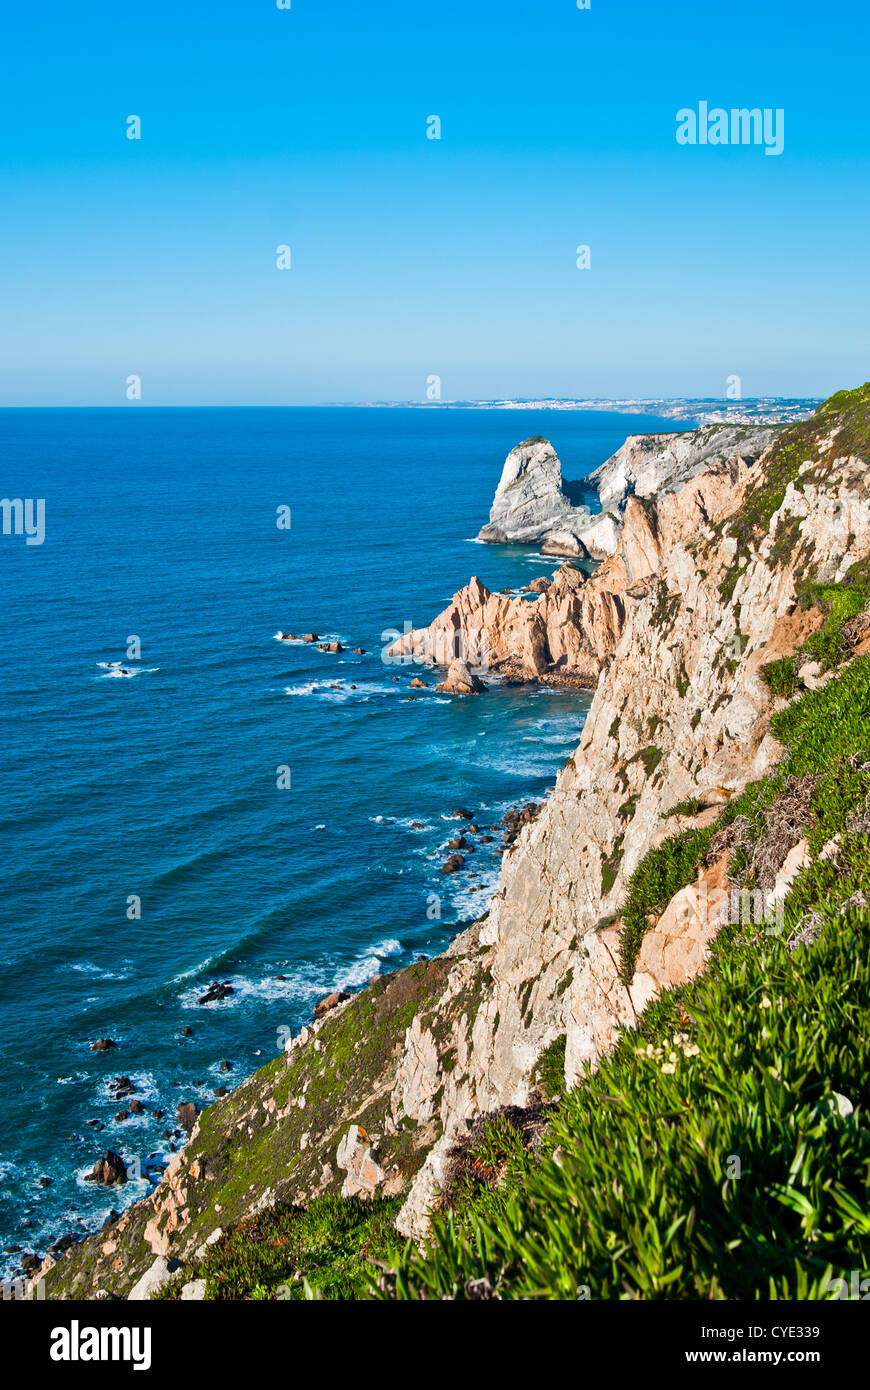 Le Cabo da Roca (le cap Roca), un cap qui constitue le point le plus occidental de la partie continentale du Portugal et l'Europe continentale Banque D'Images